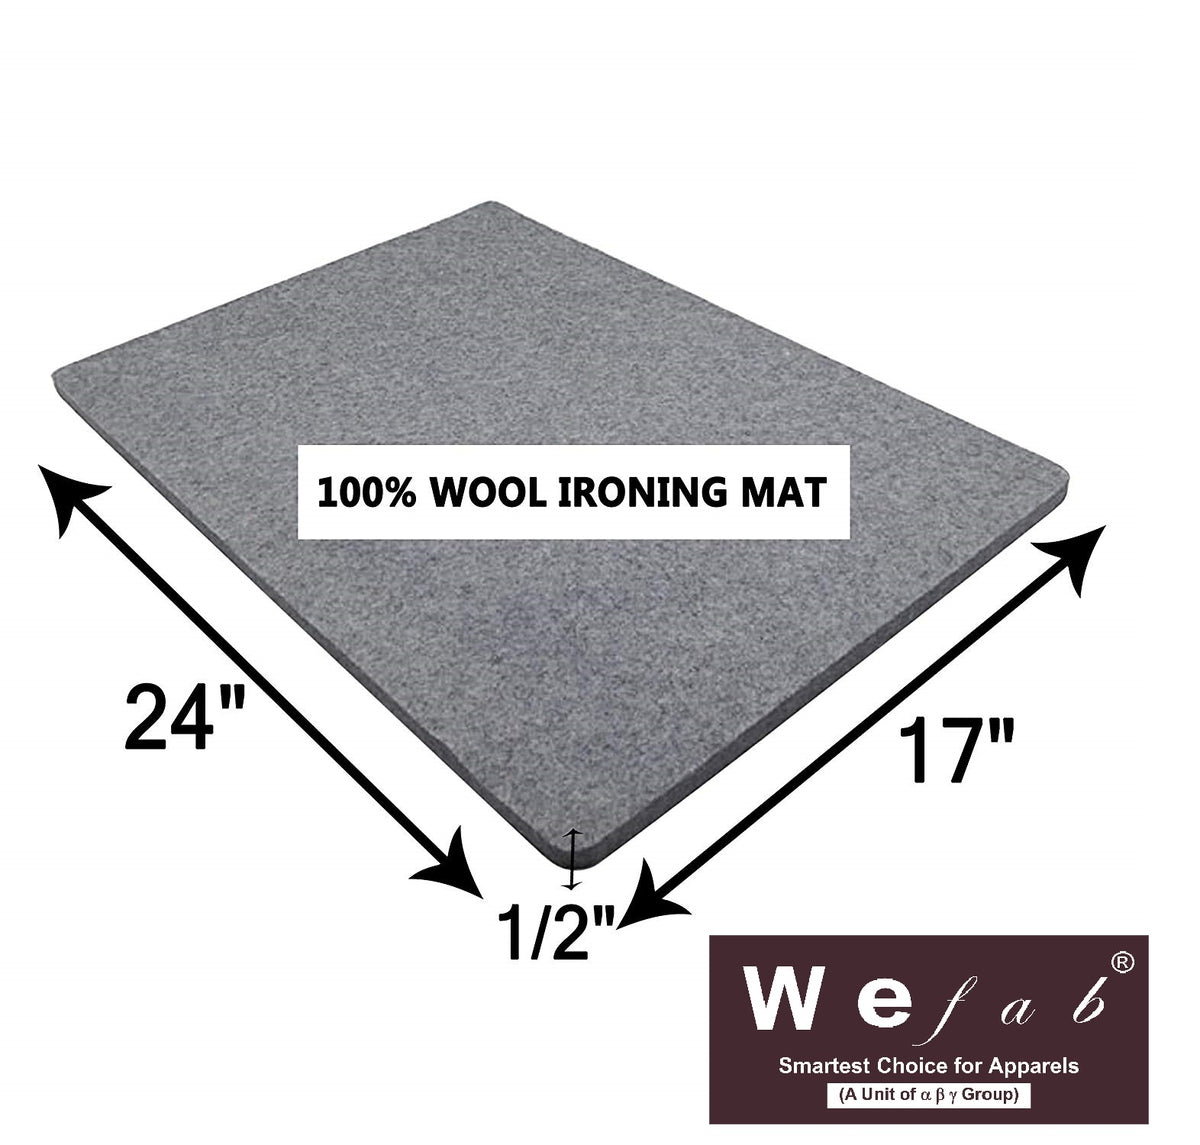 100% Wool Ironing Mat 17 x 17, SKU: 1717WOOLMAT